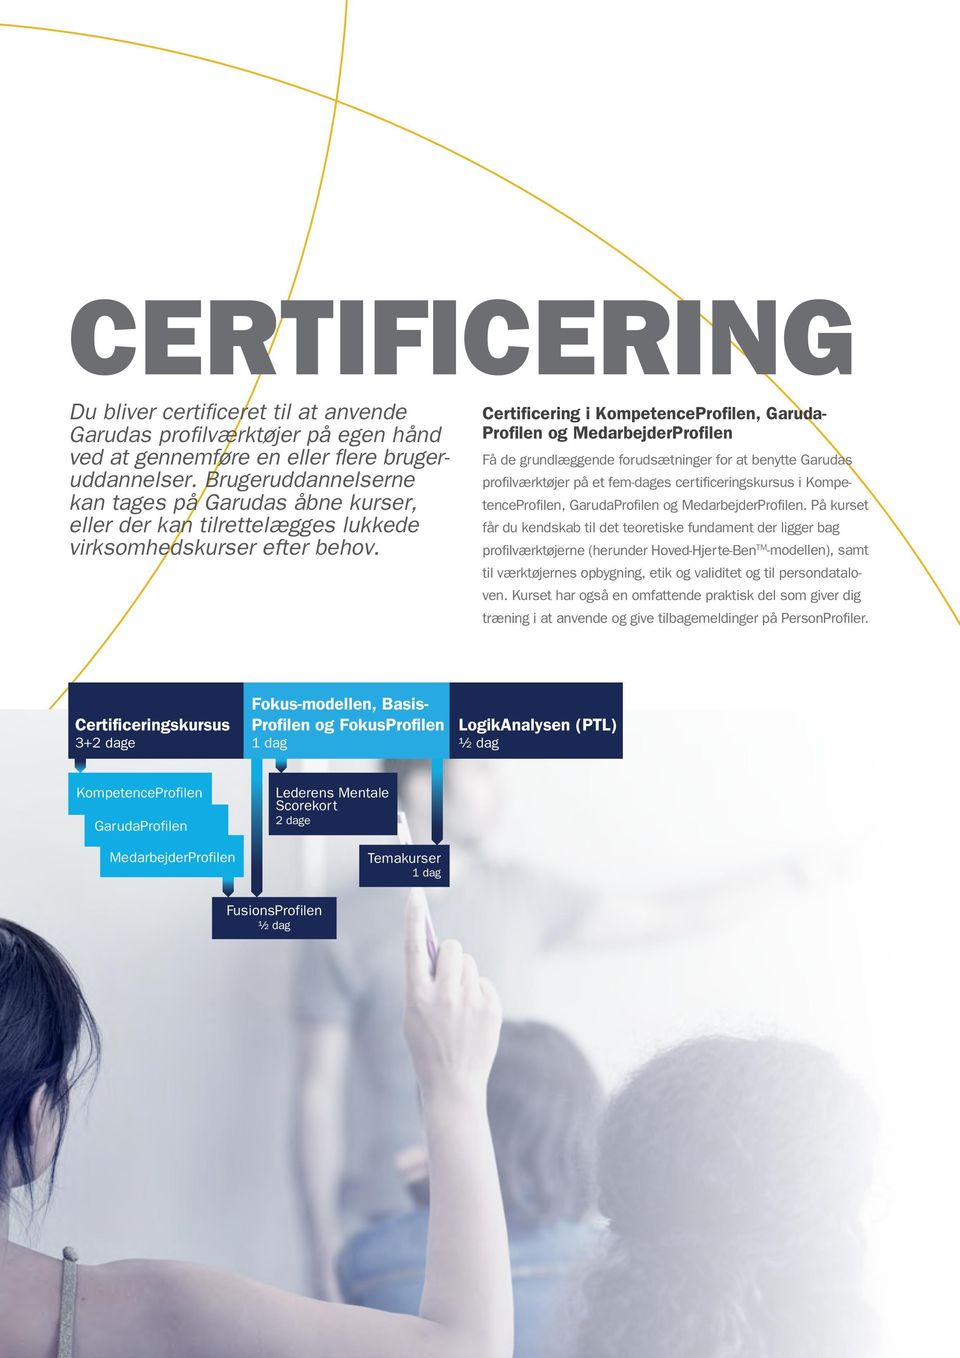 Certificering i KompetenceProfilen, Garuda- Profilen og MedarbejderProfilen Få de grundlæggende forudsætninger for at benytte Garudas profilværktøjer på et fem-dages certificeringskursus i